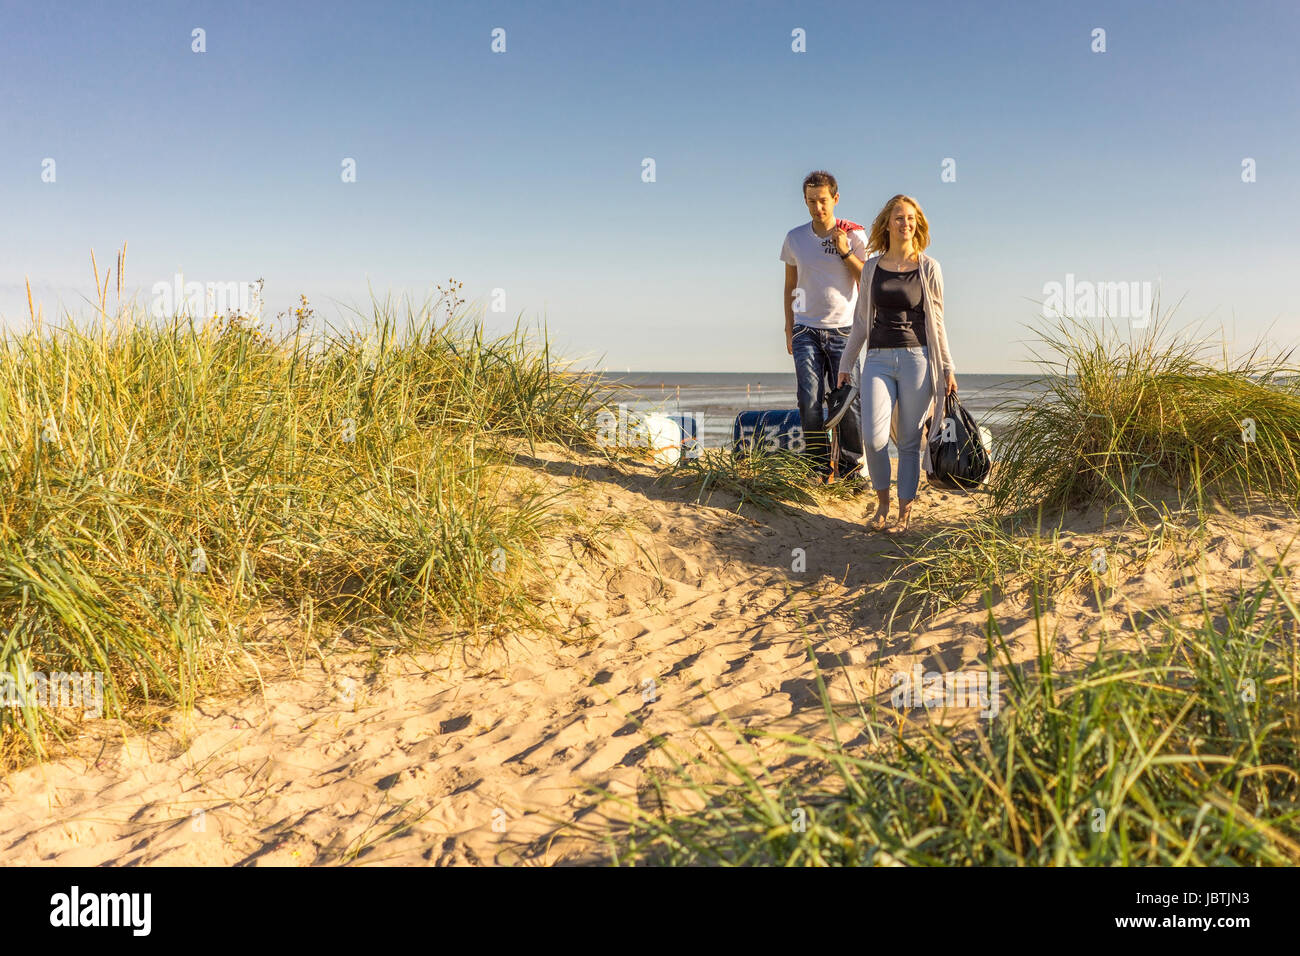 Coppia sulla spiaggia in Hooksiel - Wangerland - costa del Mare del Nord, Paar am Strand in Hooksiel - Wangerland - Nordseekueste Foto Stock